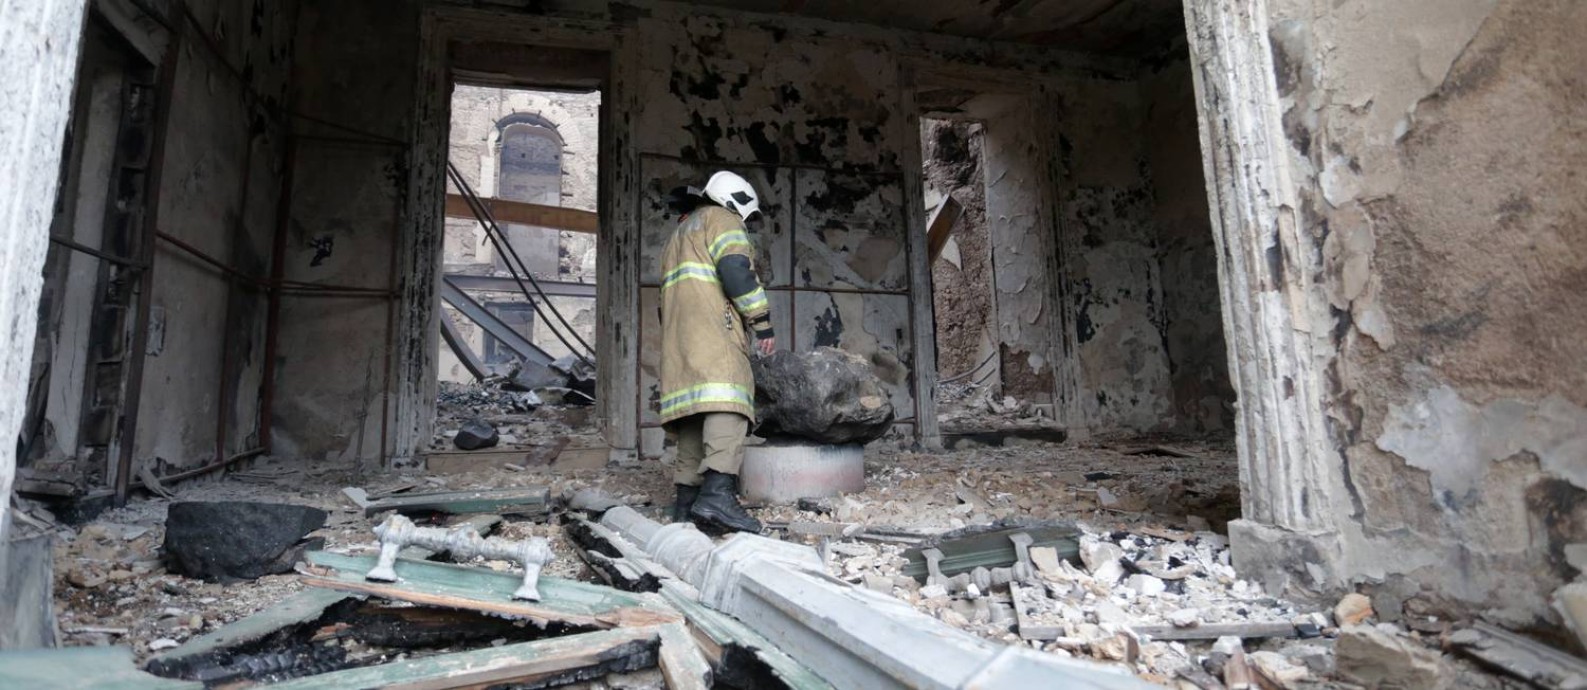 Escombros do Museu Nacional, destruído após incêndio Foto: Marcio Alves / Agência O Globo